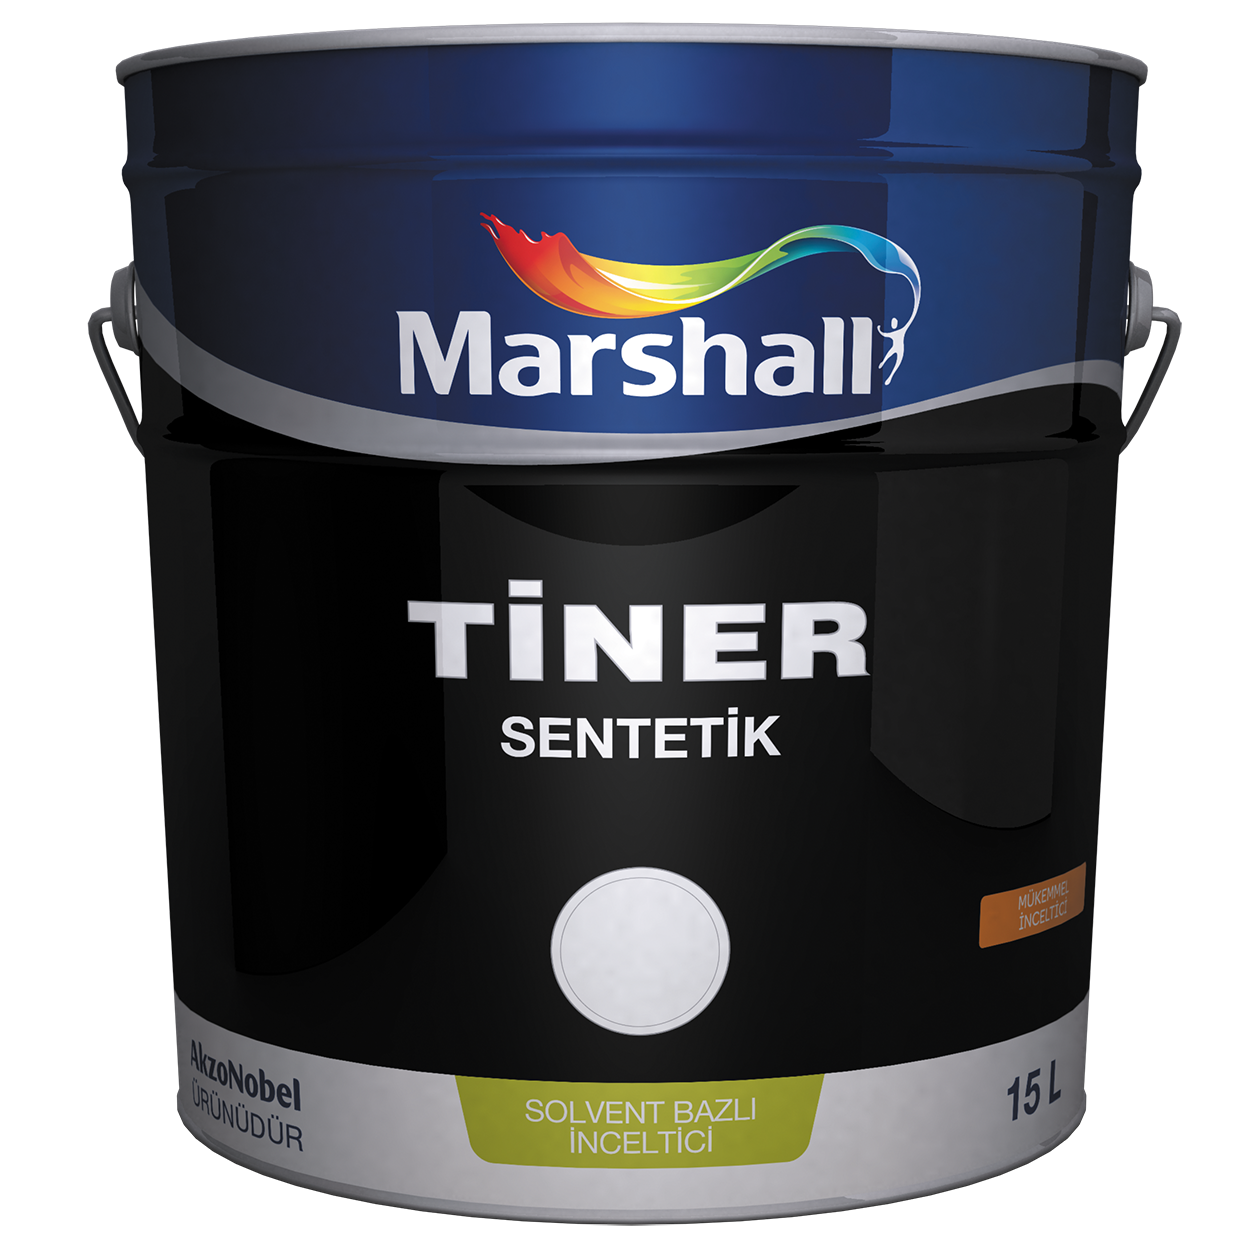 MARSHALL Tiner sintetik 15 L